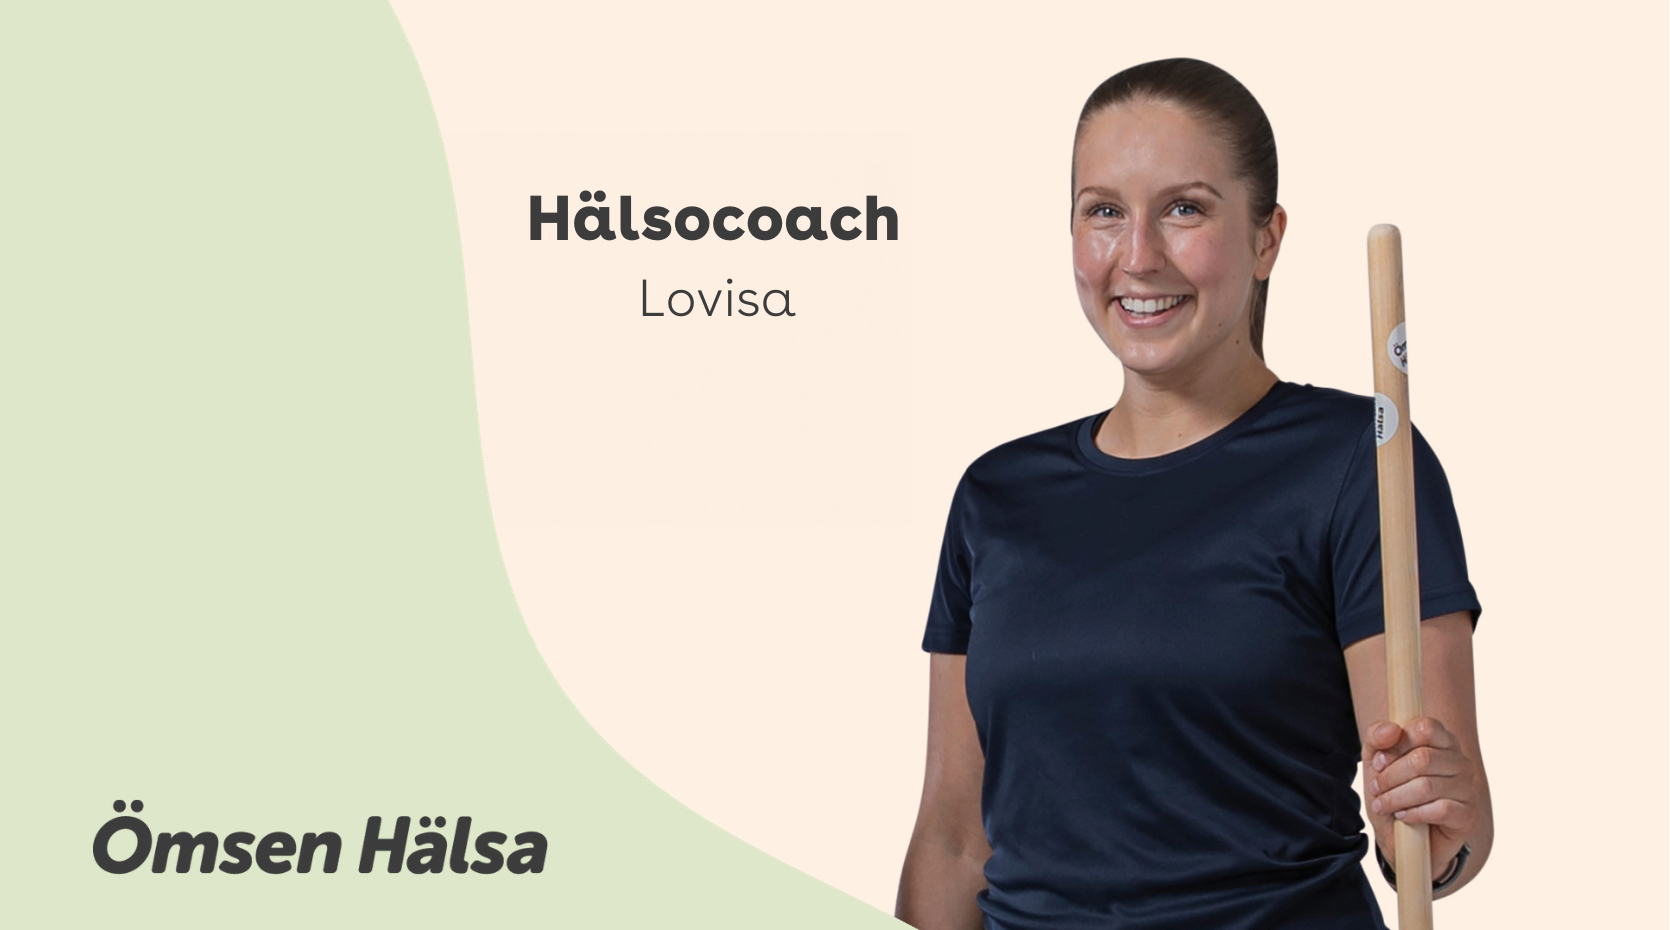 Hälsocoach Lovisa står med en träningspinne i handen